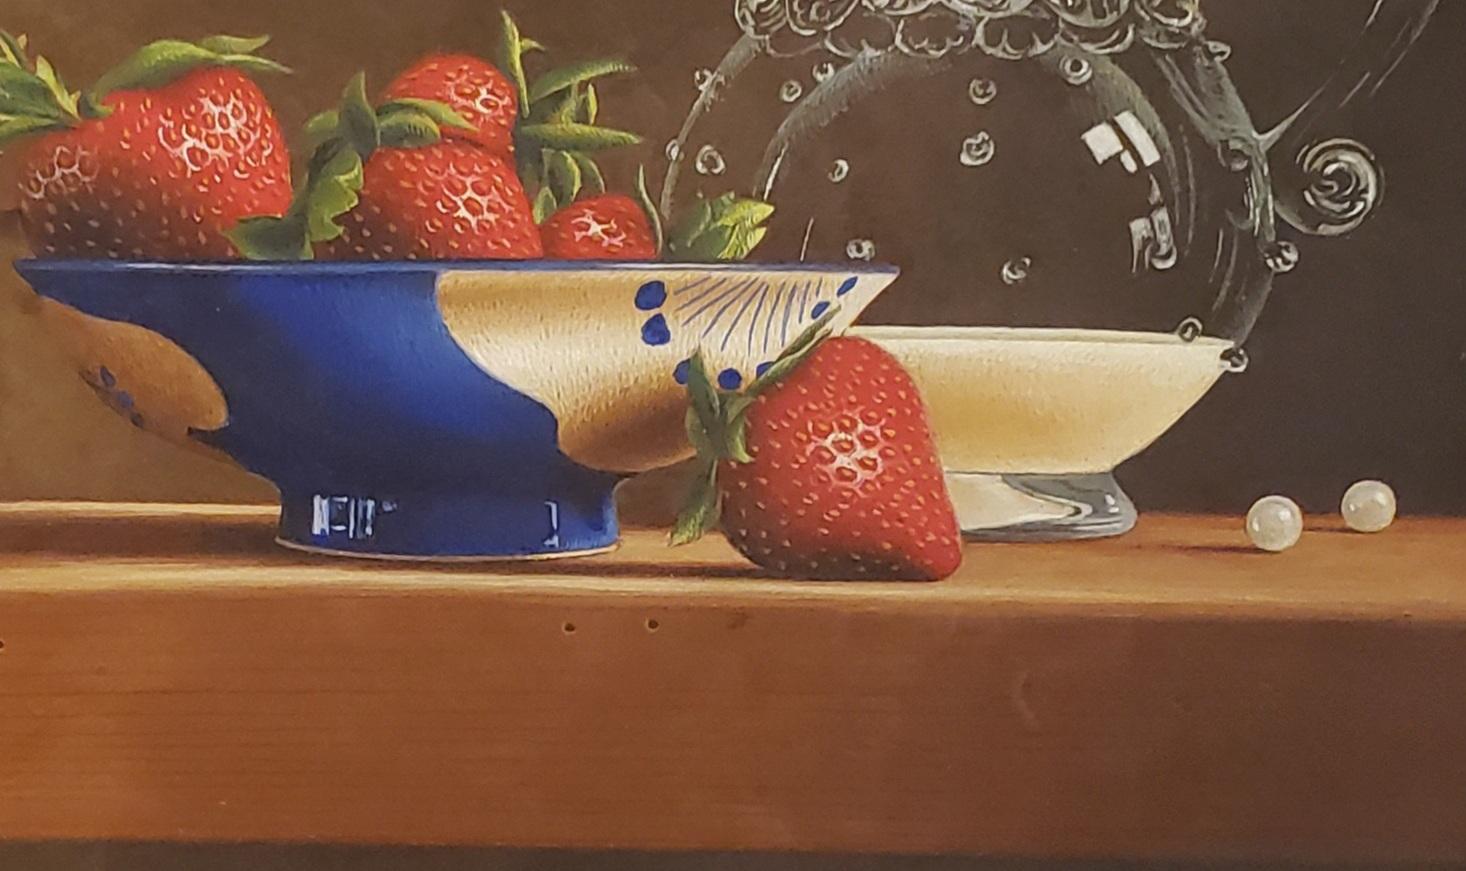 Strawberries and Cream von dem realistischen Maler Mark Thompson ist 9,5 x 7,5 Zoll groß. Es ist mit Eitempera gemalt, die in der Kunstwelt Jahrhunderte alt ist. Beachten Sie die Spiegelungen im Gemälde. Es sieht aus wie ein 3D-Bild oder eine